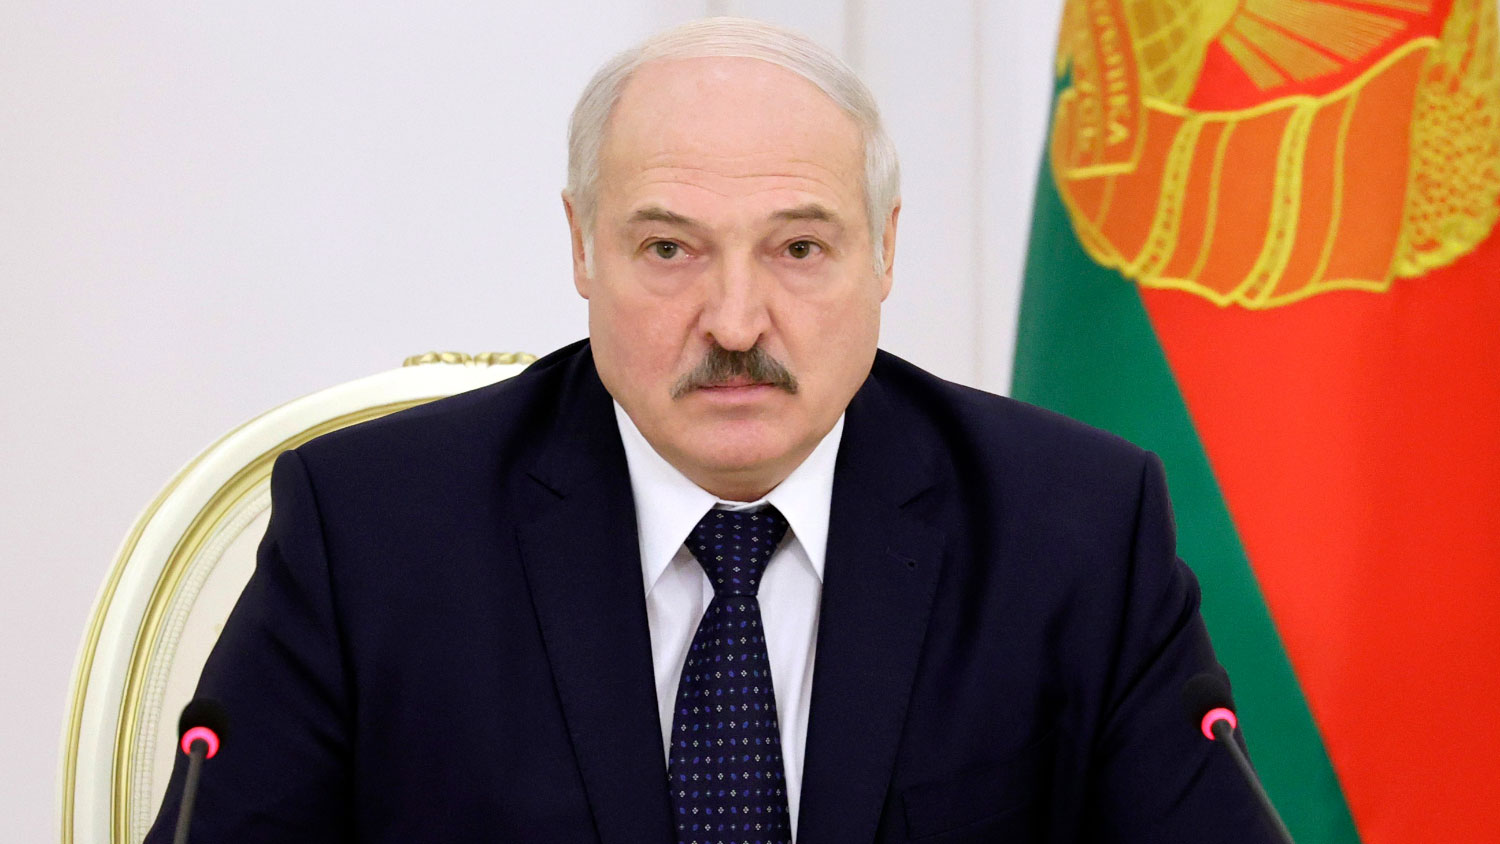 Лукашенко назвал страну, из которой поступило сообщение о минировании самолета Ryanair  